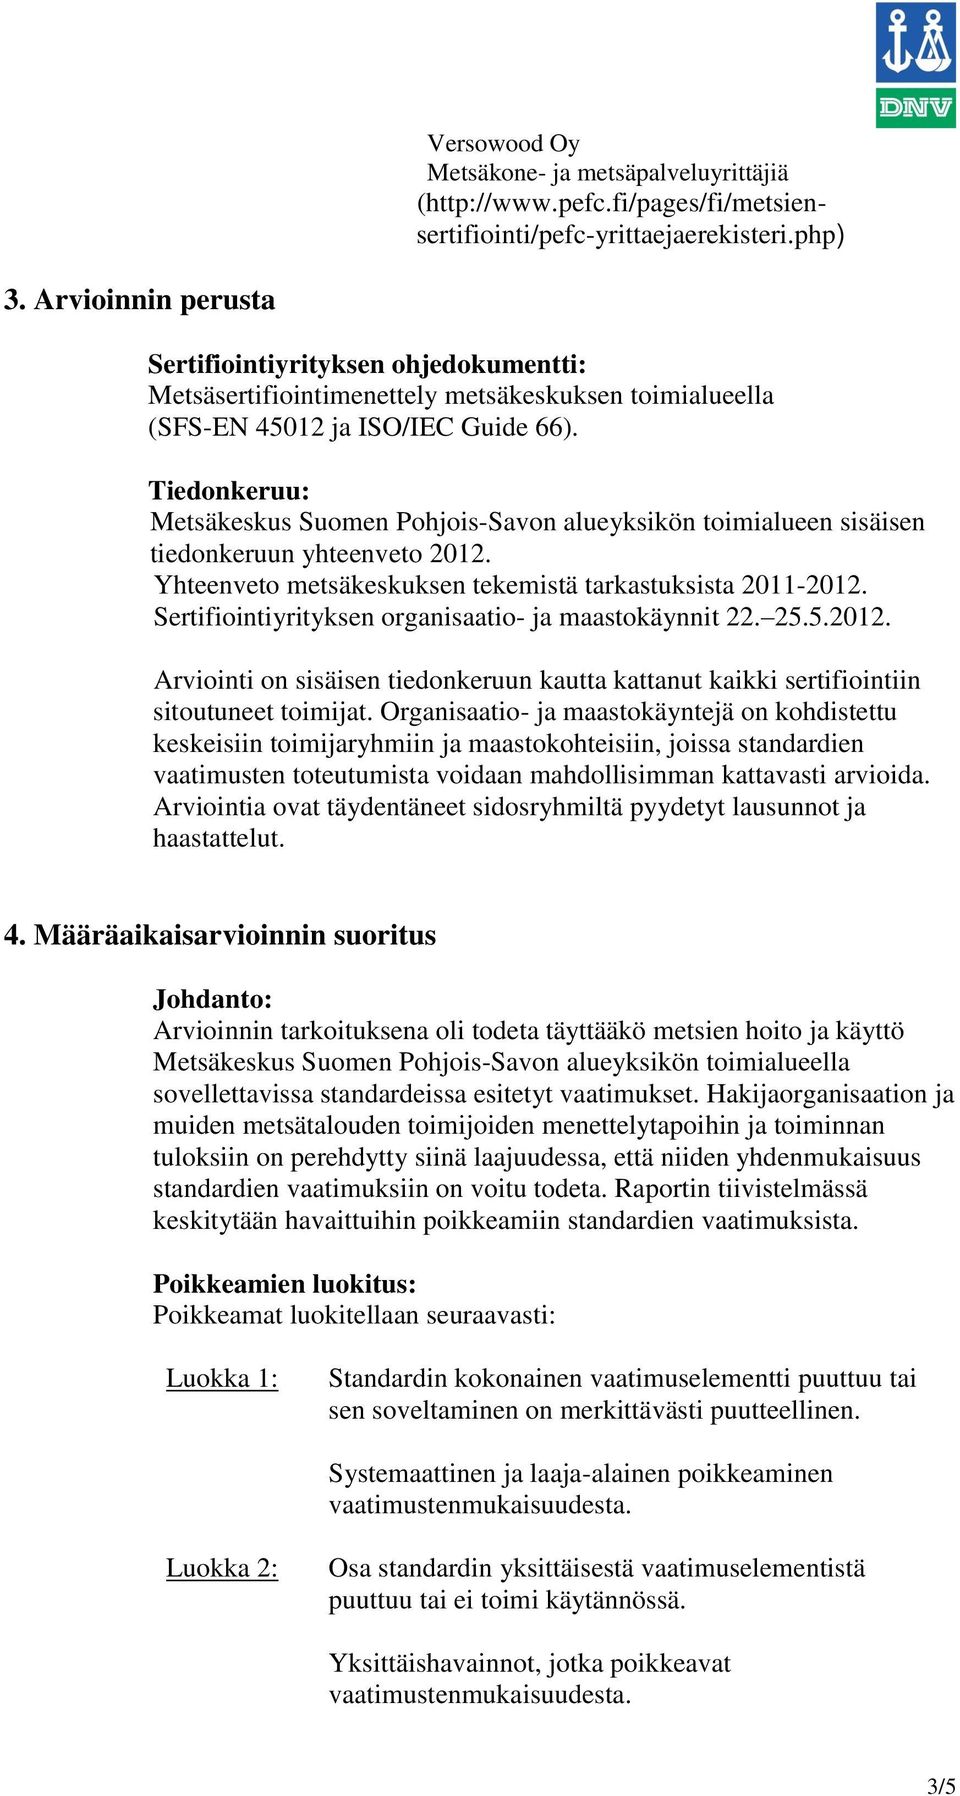 Tiedonkeruu: Metsäkeskus Suomen Pohjois-Savon alueyksikön toimialueen sisäisen tiedonkeruun yhteenveto 2012. Yhteenveto metsäkeskuksen tekemistä tarkastuksista 2011-2012.